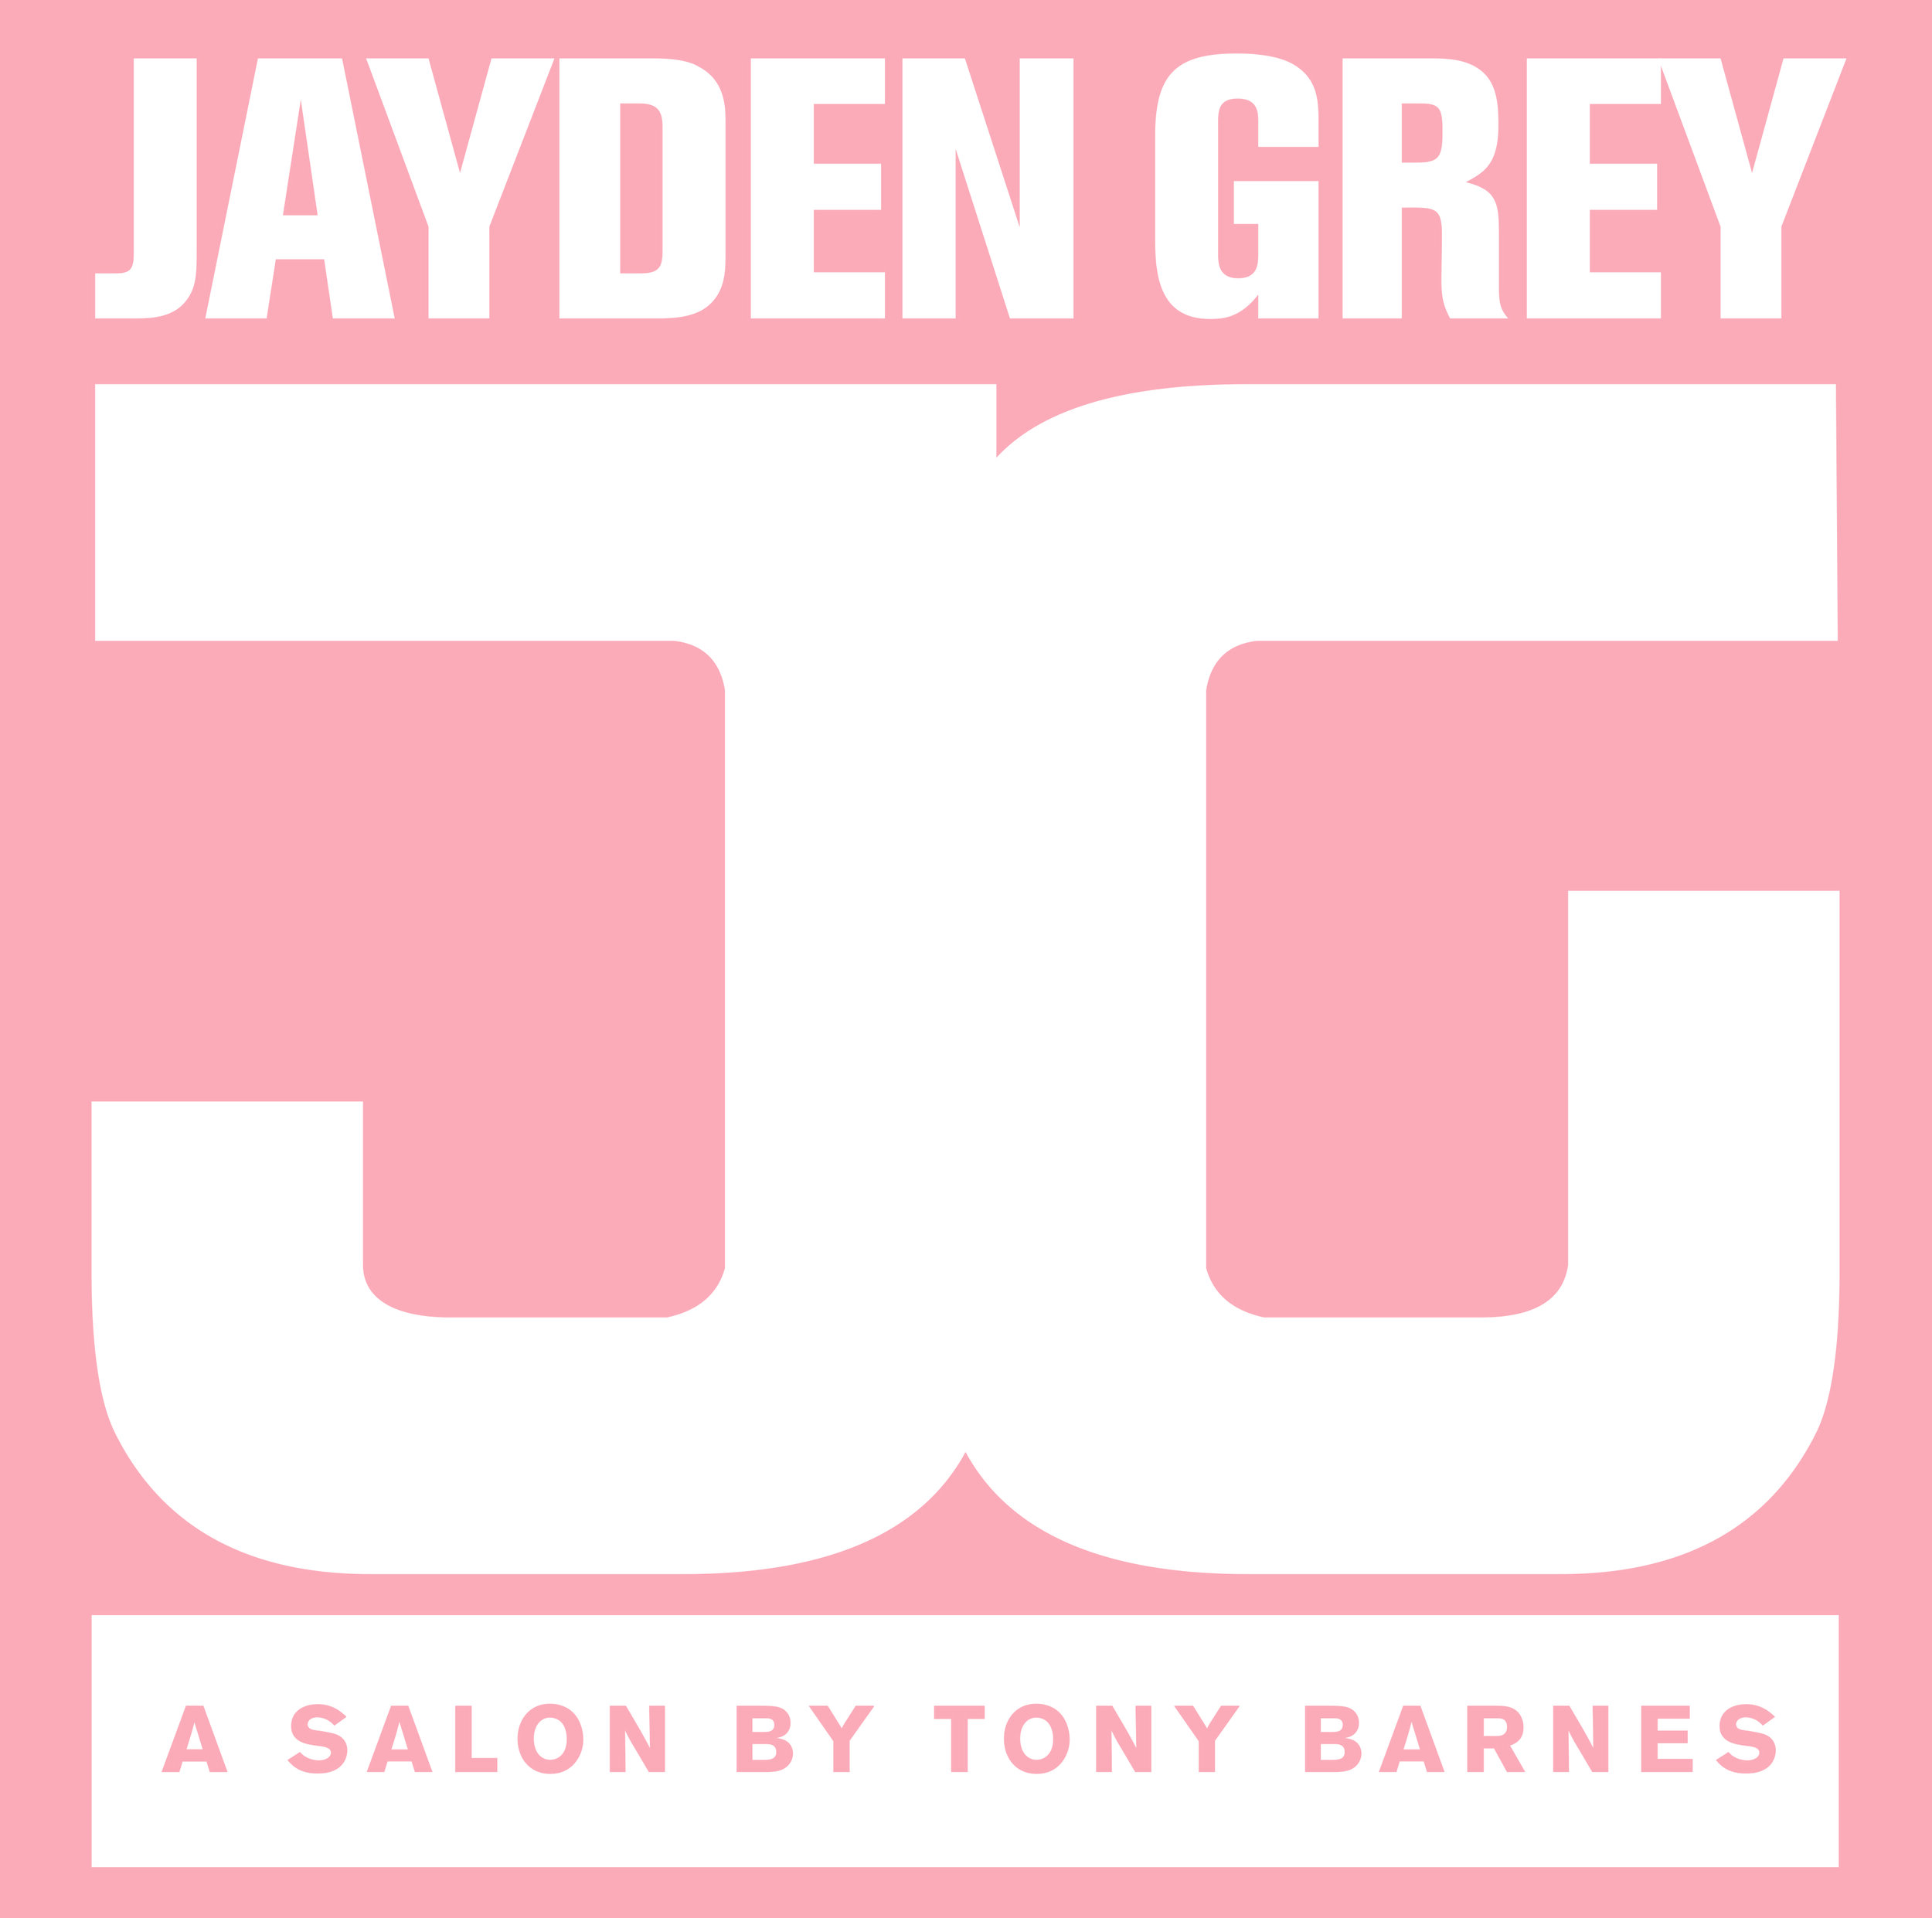 Jayden grey